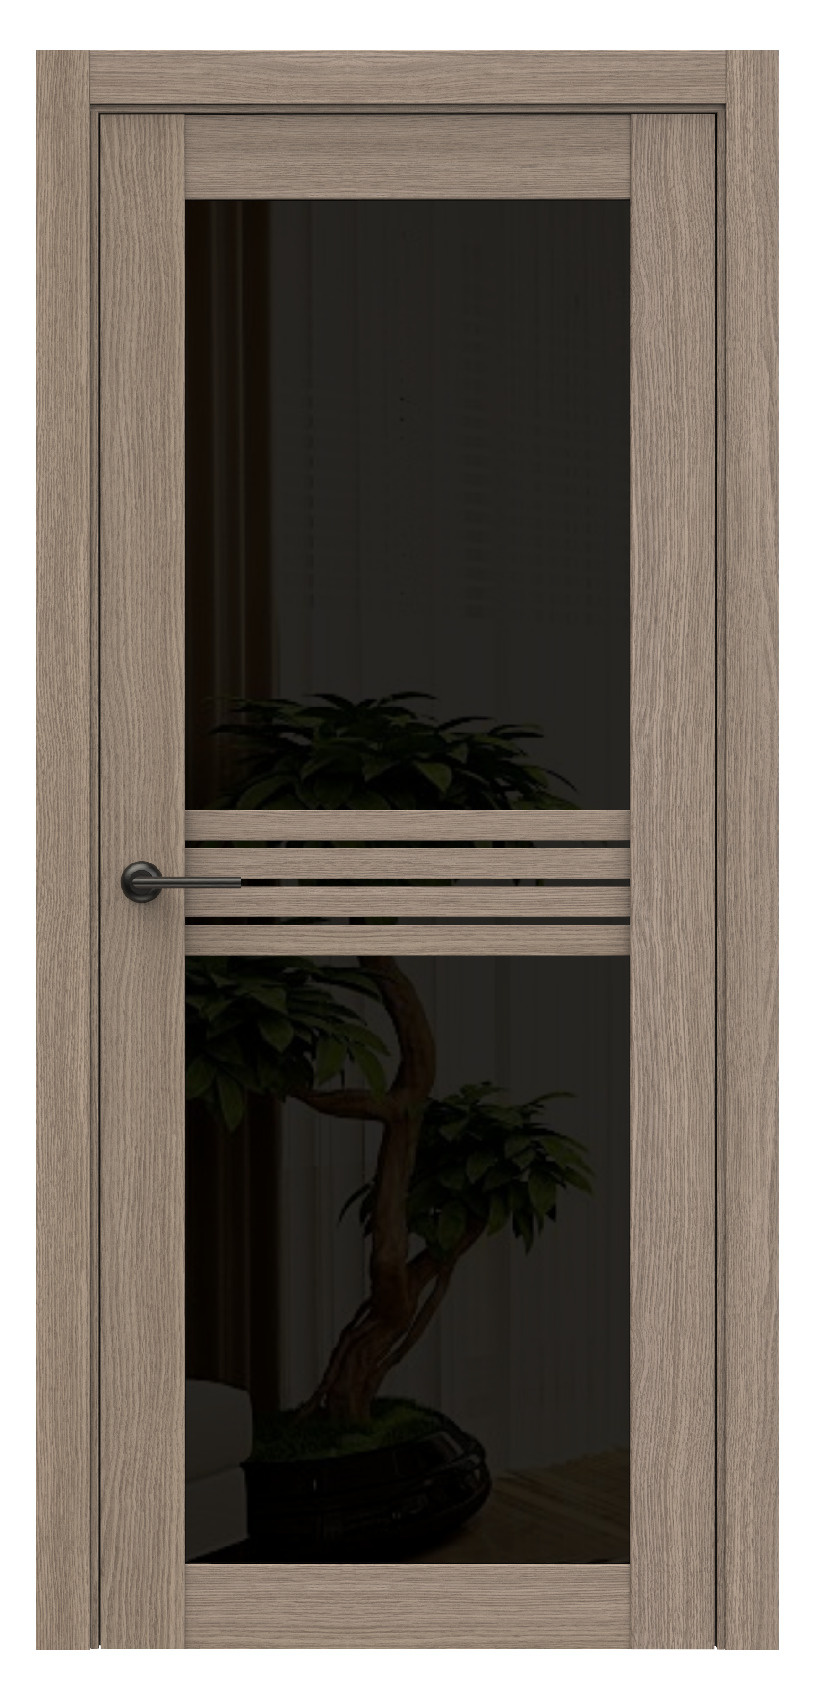 Questdoors Межкомнатная дверь Q74, арт. 17494 - фото №1